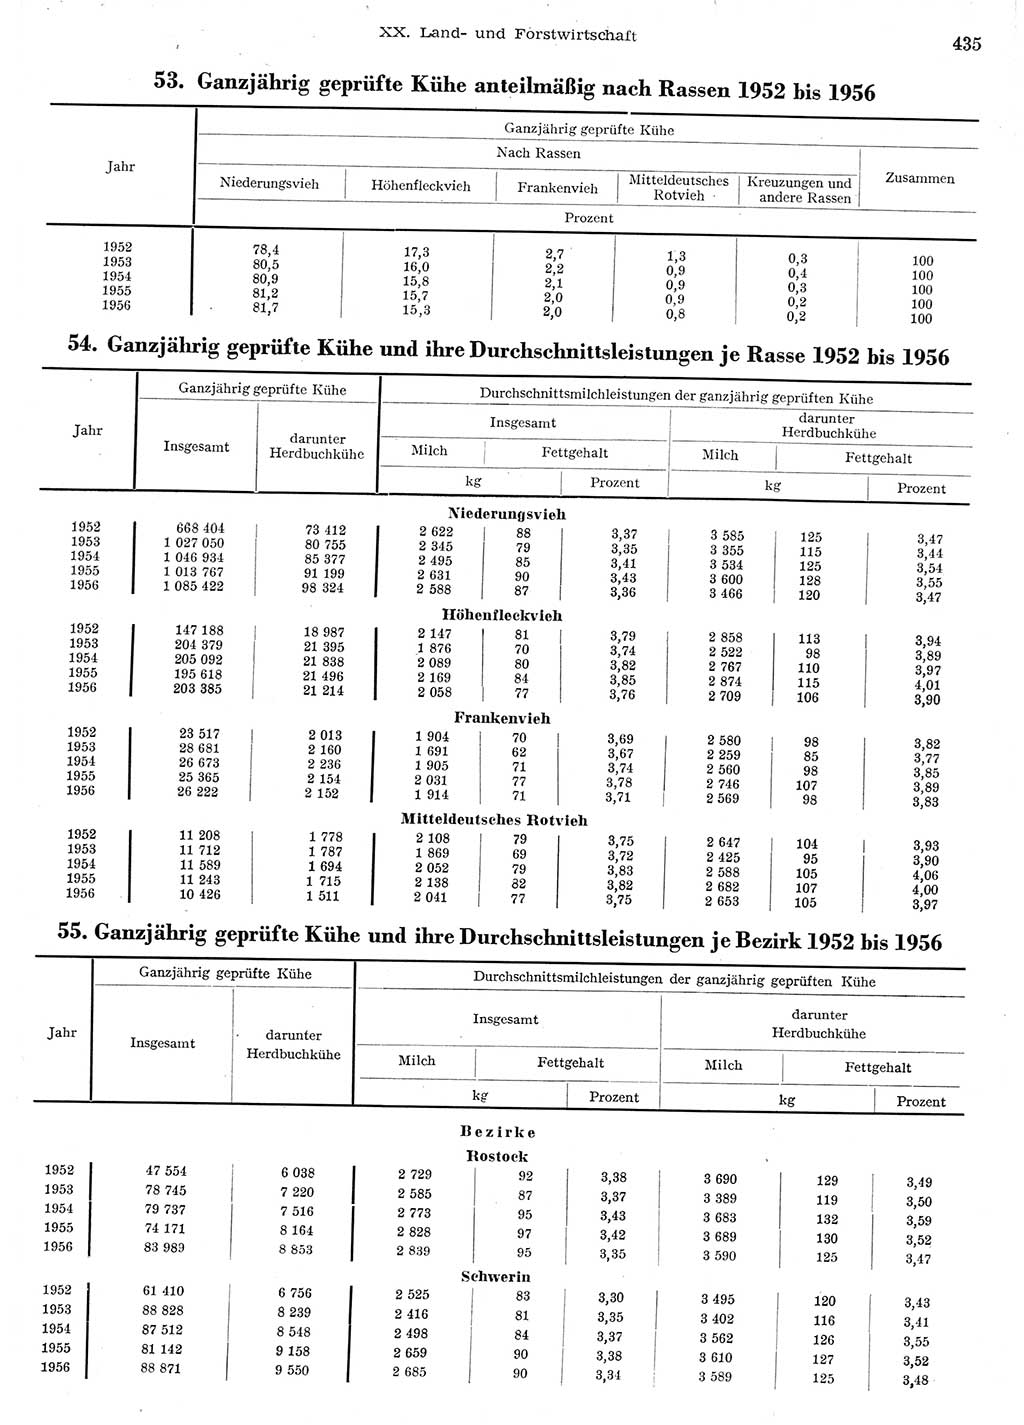 Statistisches Jahrbuch der Deutschen Demokratischen Republik (DDR) 1956, Seite 435 (Stat. Jb. DDR 1956, S. 435)